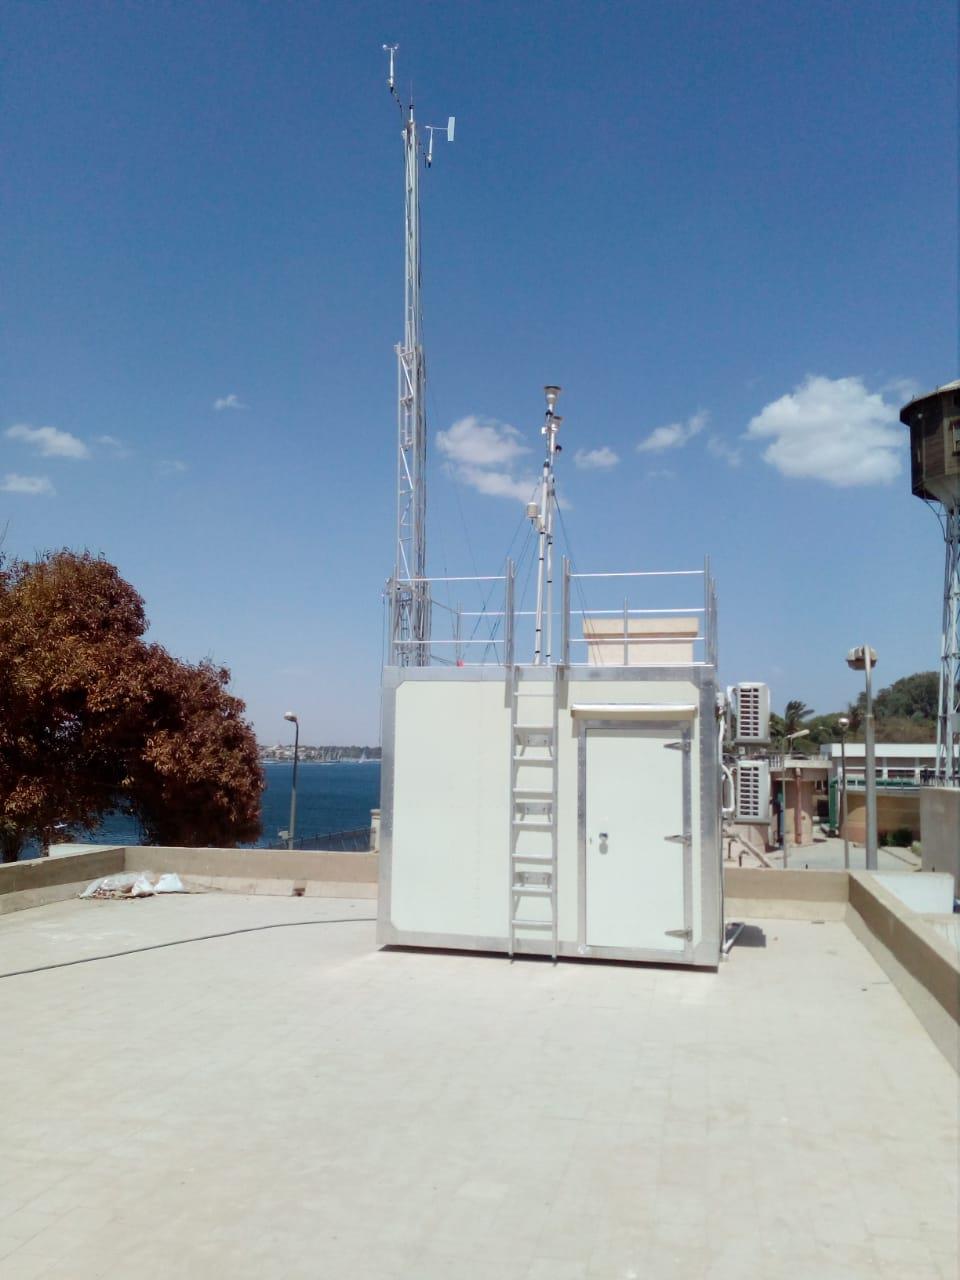 إنشاء أول محطة رصد لحظية لرصد ملوثات الهواء (1)